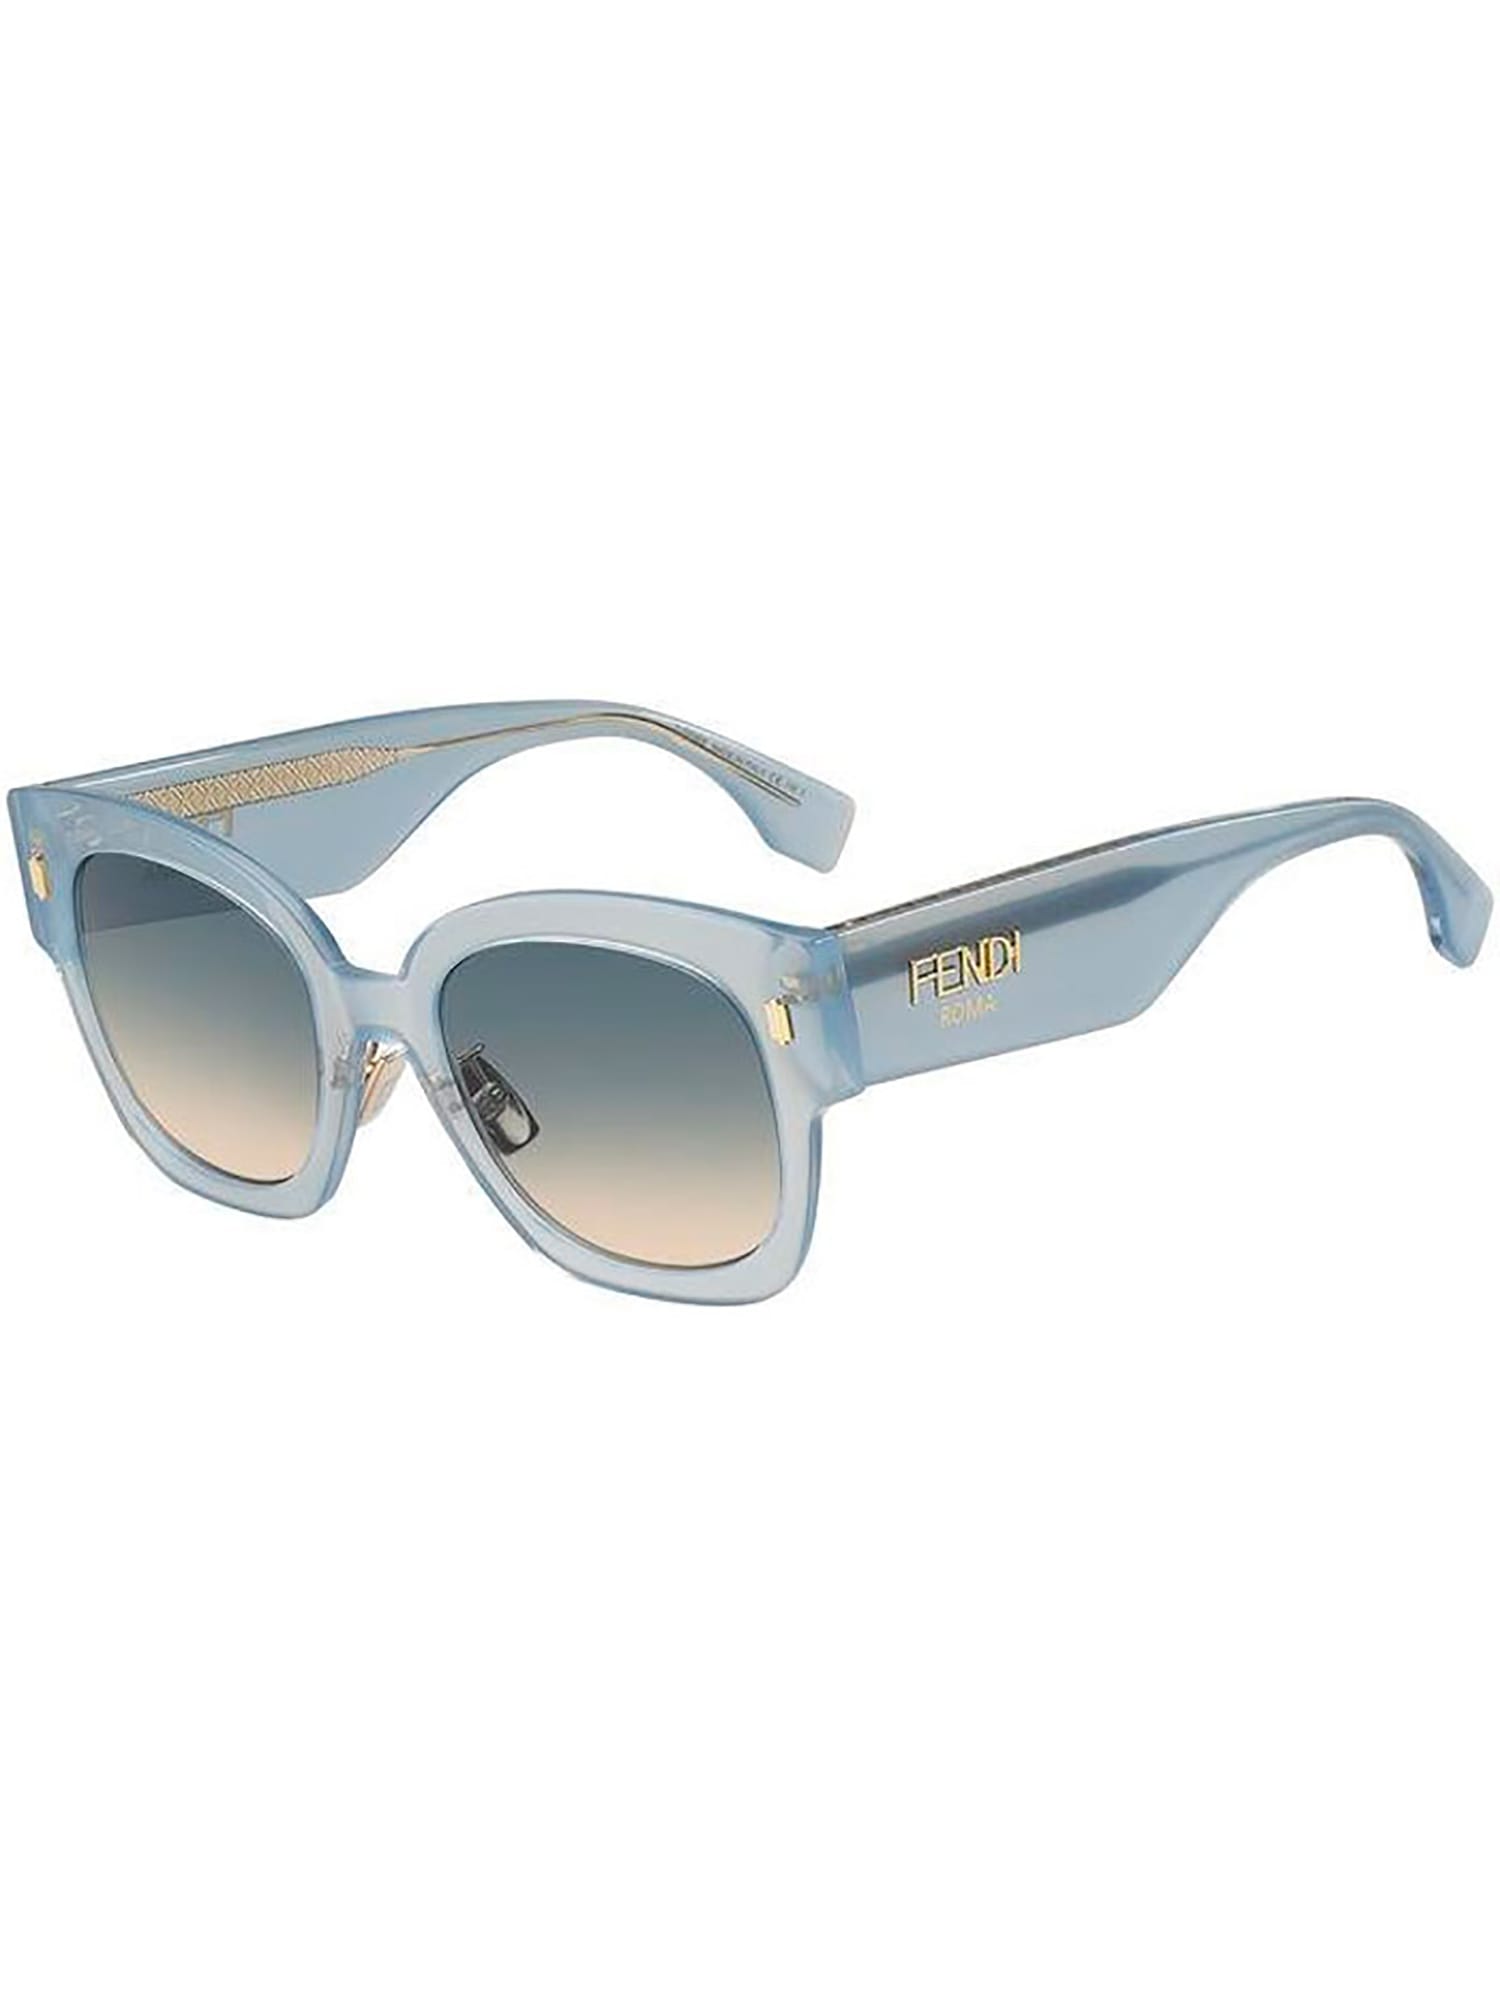 Fendi Ff 0458/g/s Sunglasses In Mvu/pr Azure